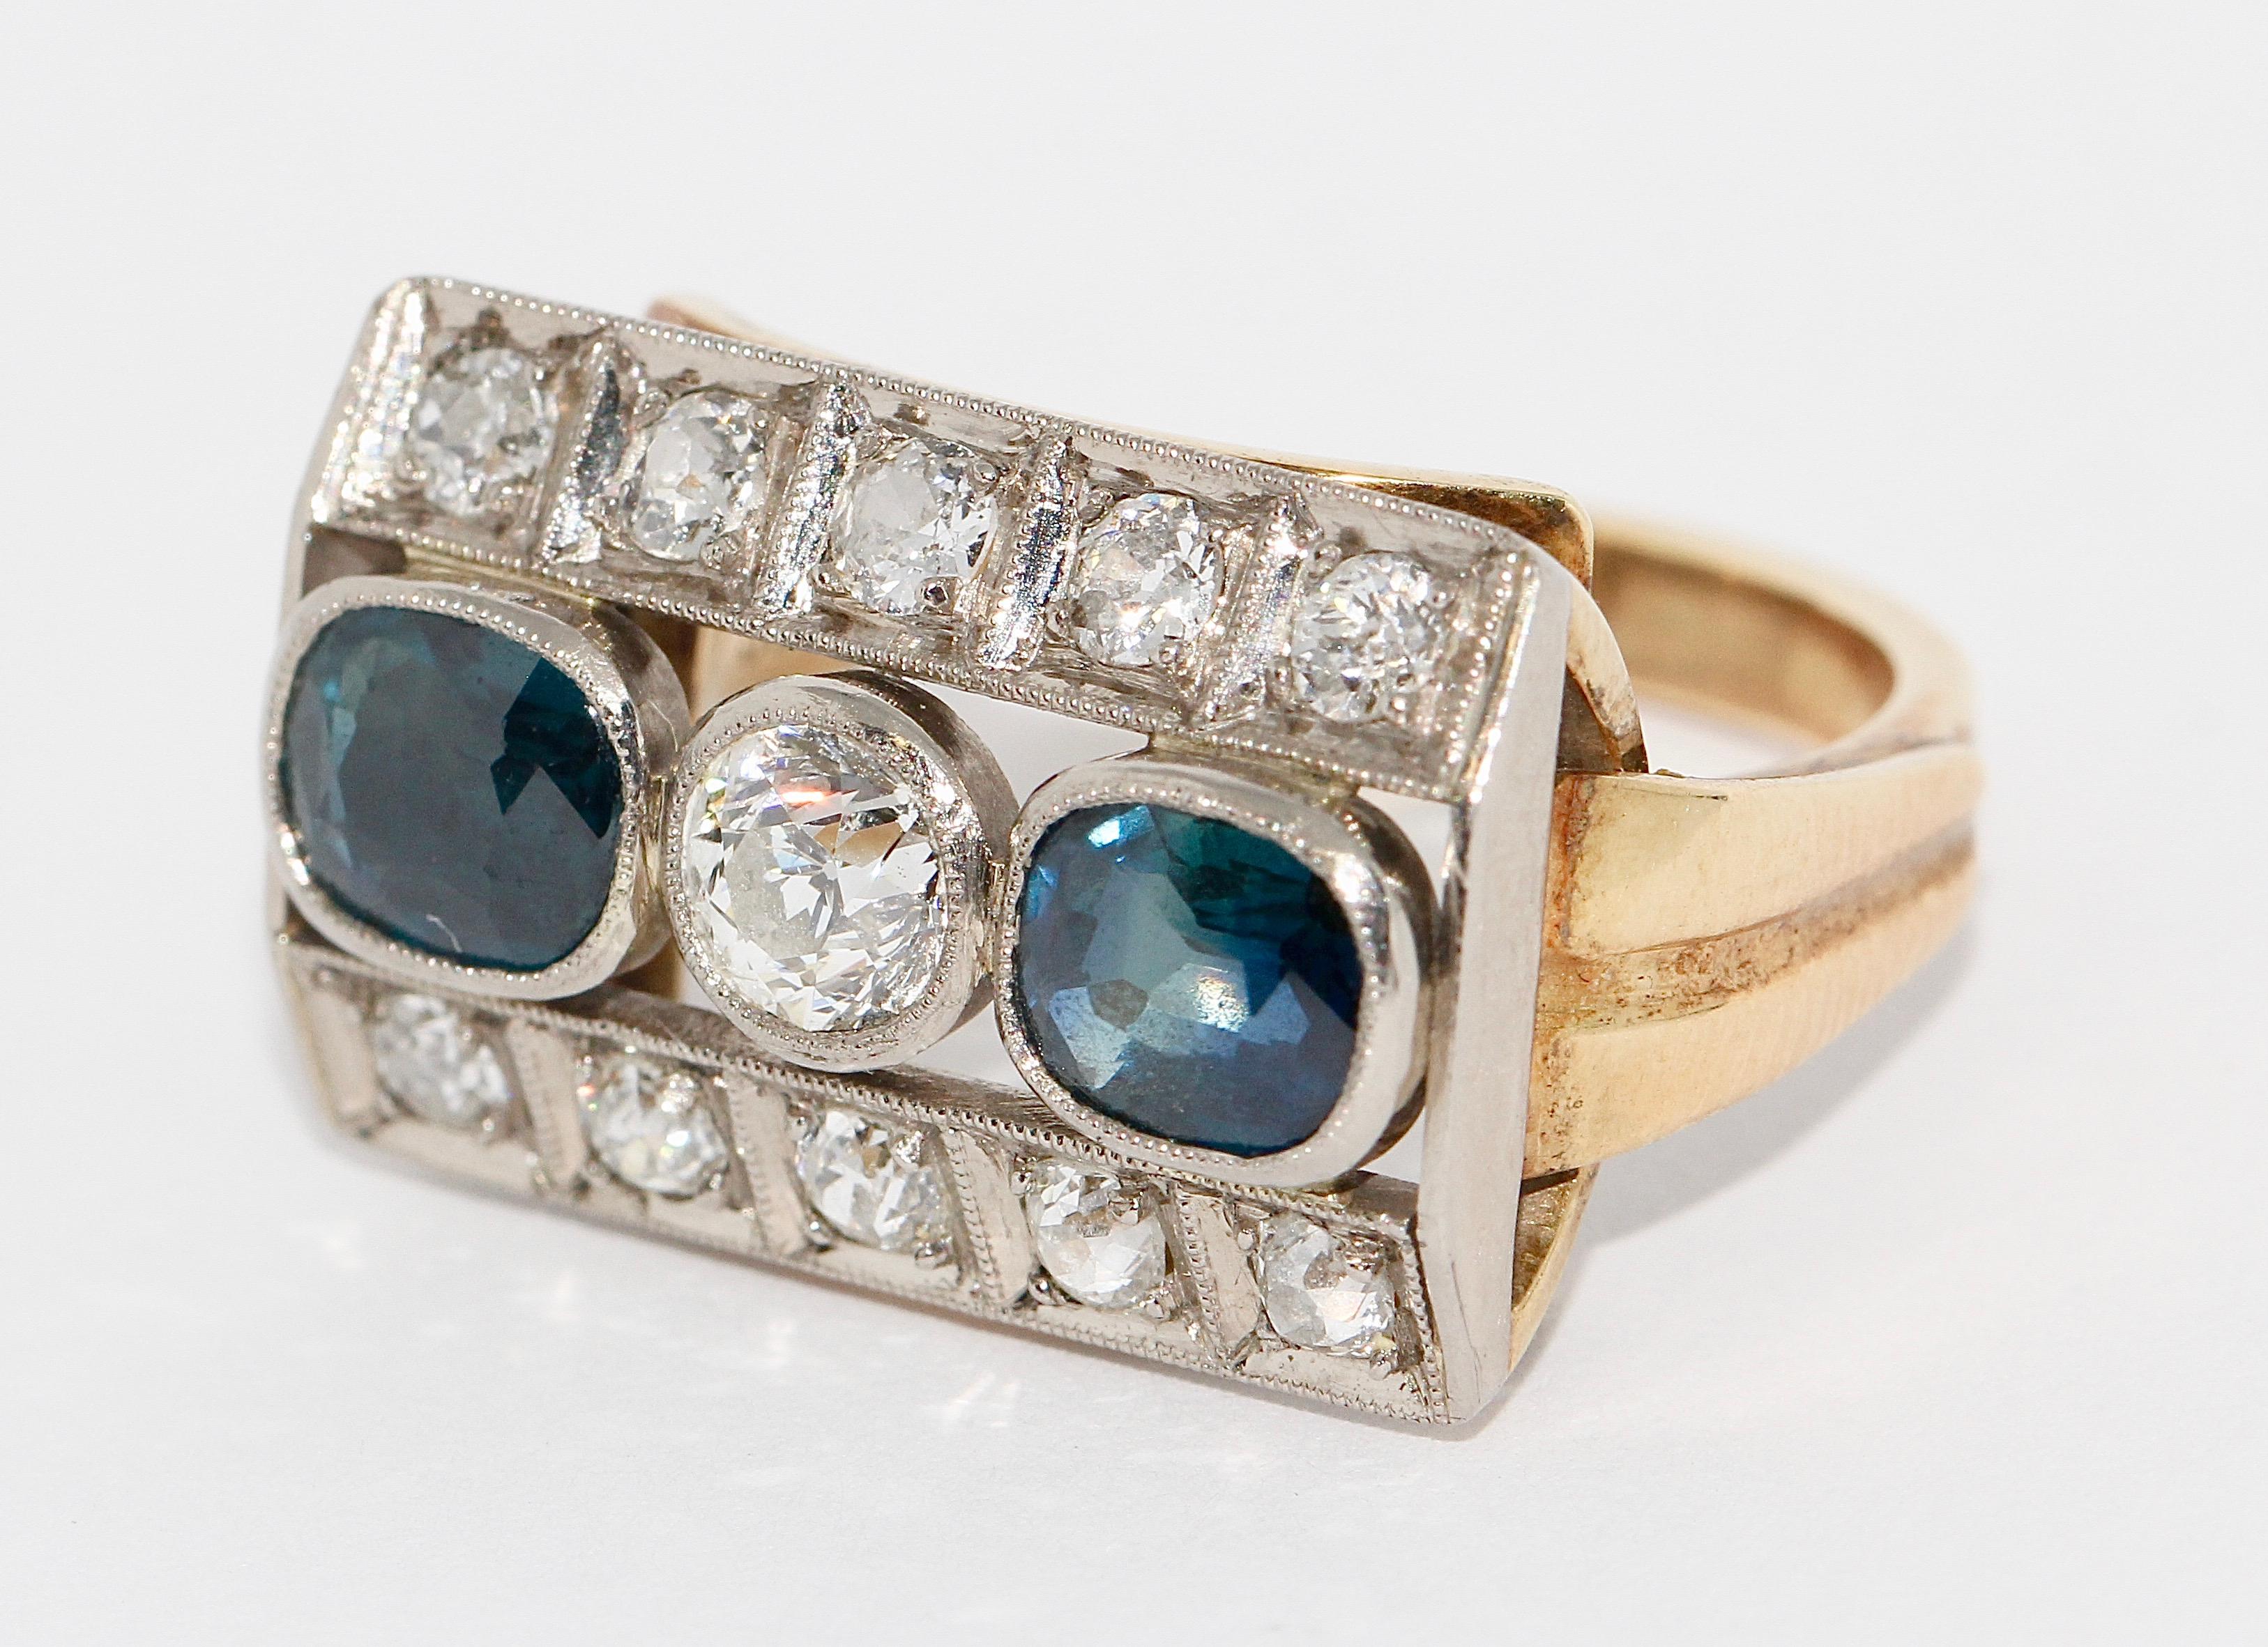 Anillo antiguo de oro para señora, con zafiros y diamantes.

El diamante solitario central tiene unos 0,4 quilates.

Talla de anillo US alrededor de 6 1/2.

Incluye certificado de autenticidad.